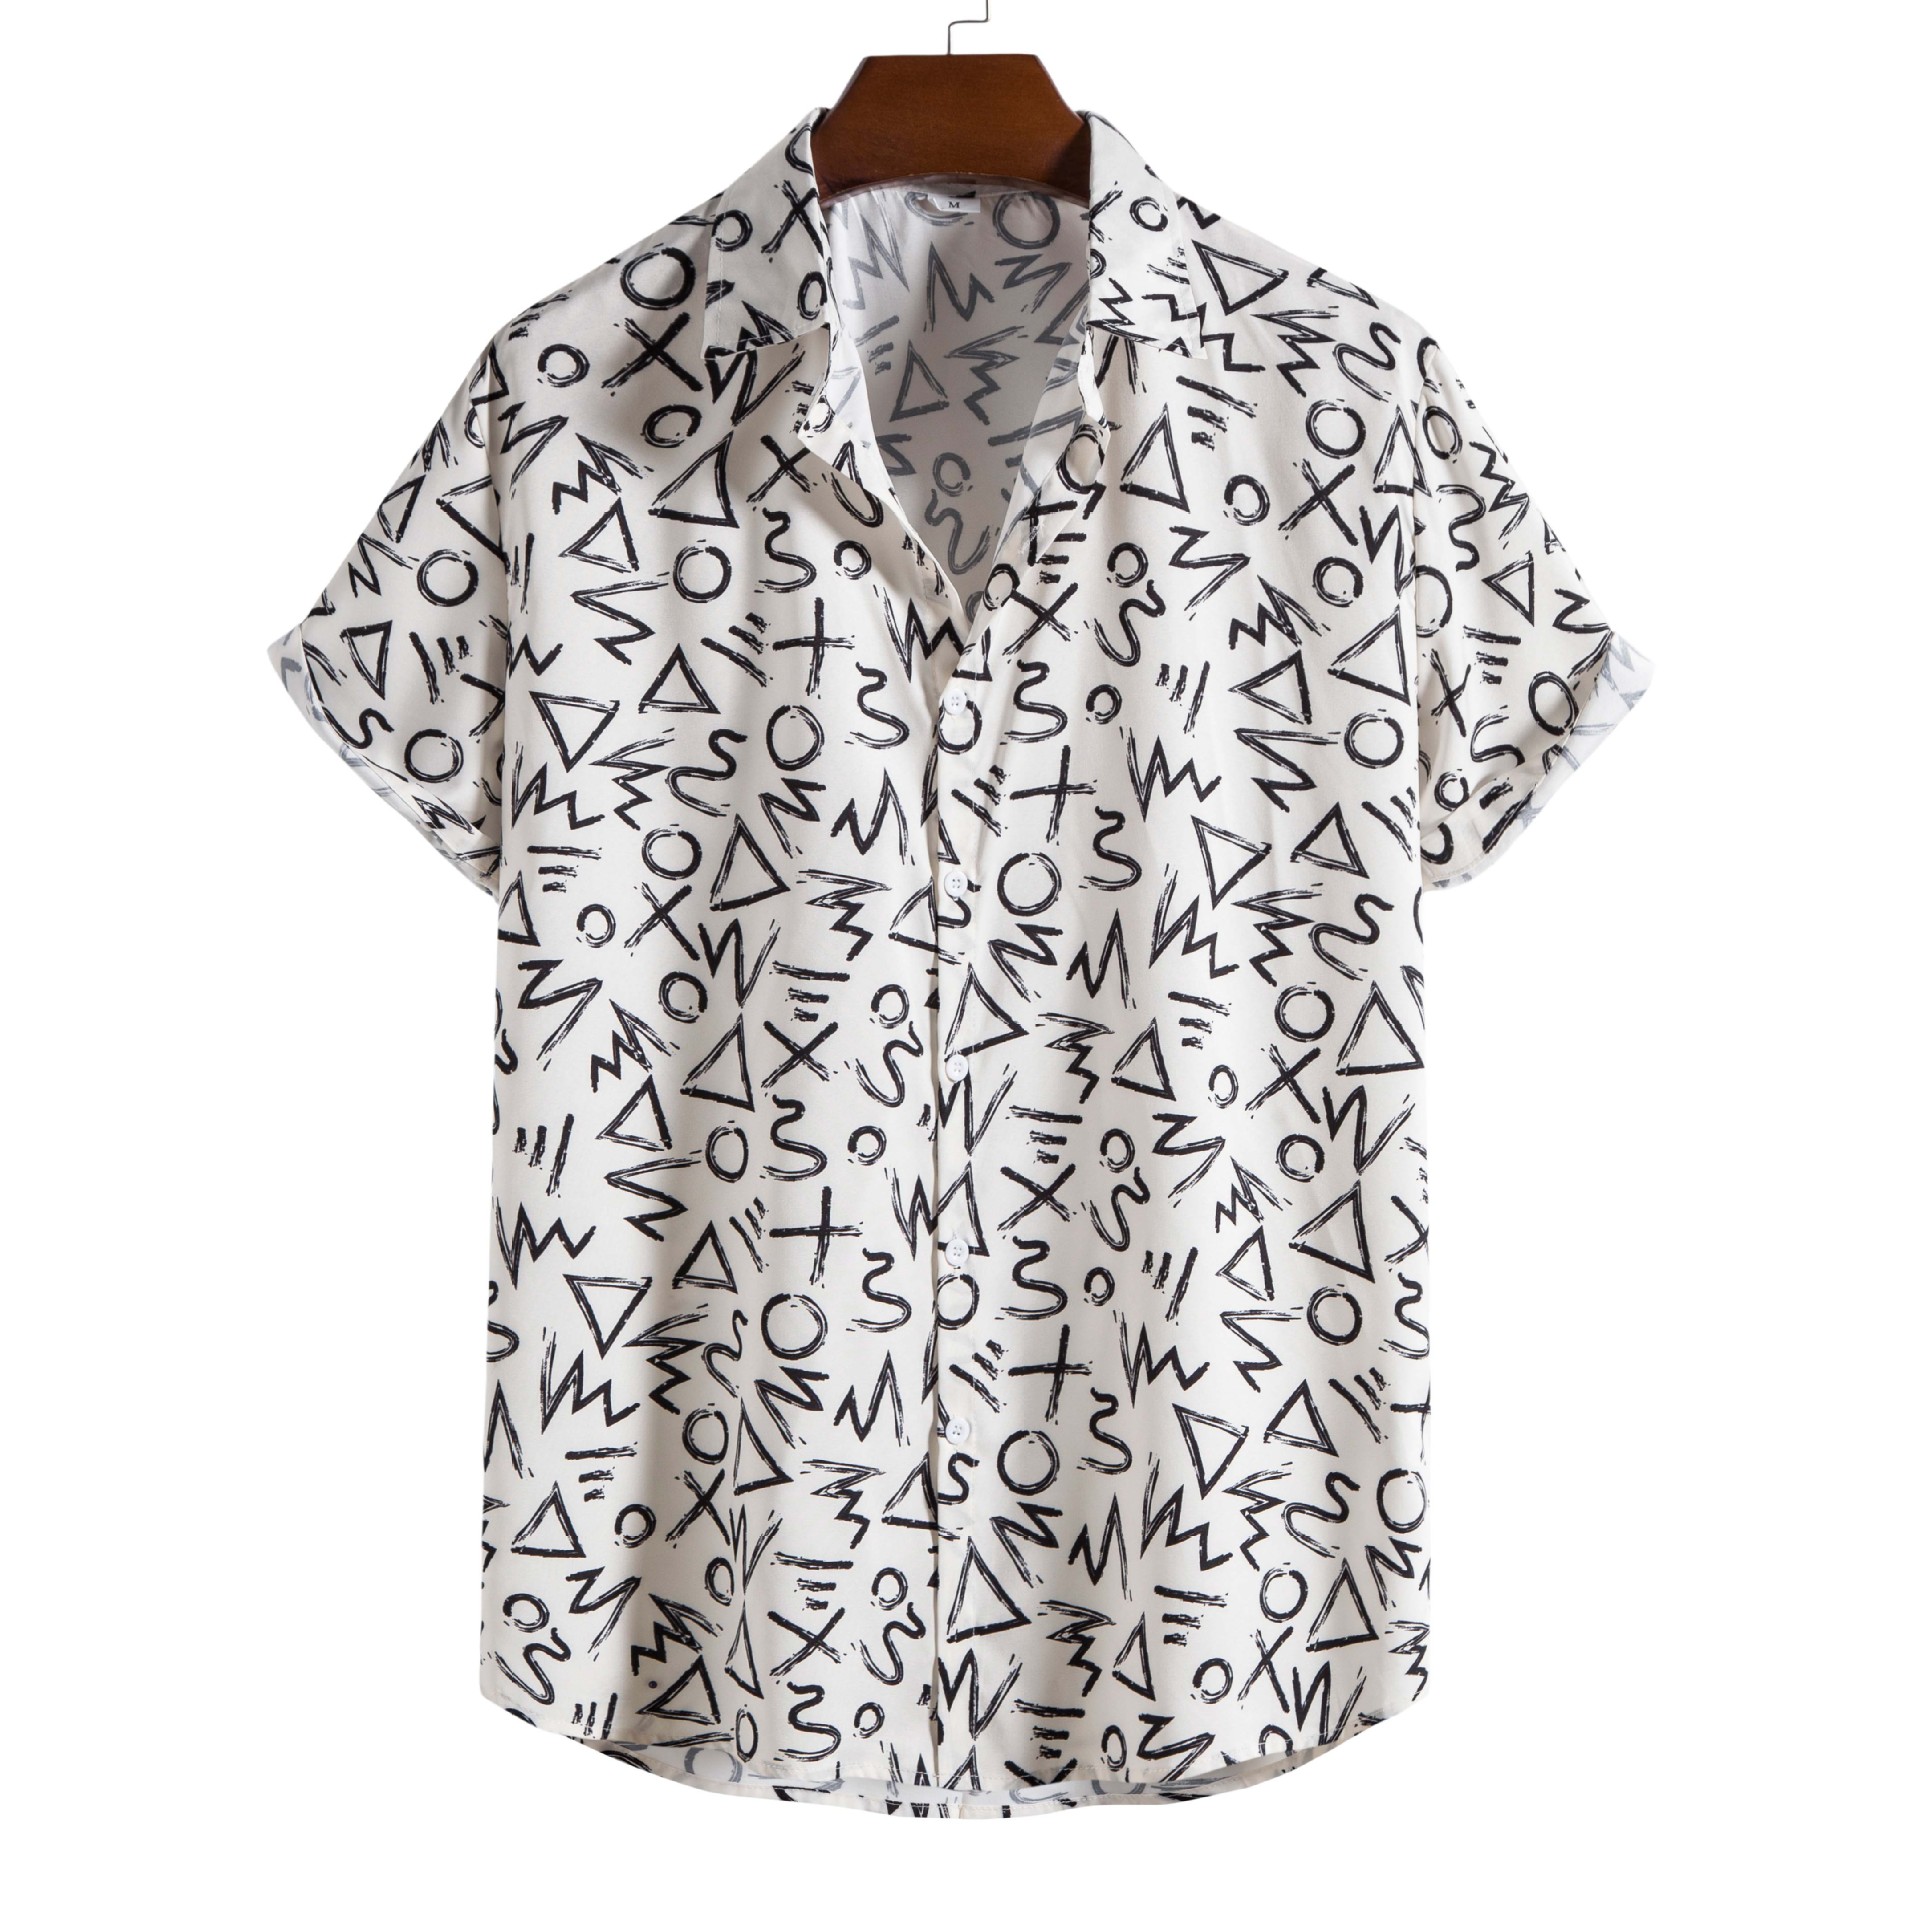 Men's Fashion Digital Print Short Sleeve Shirt